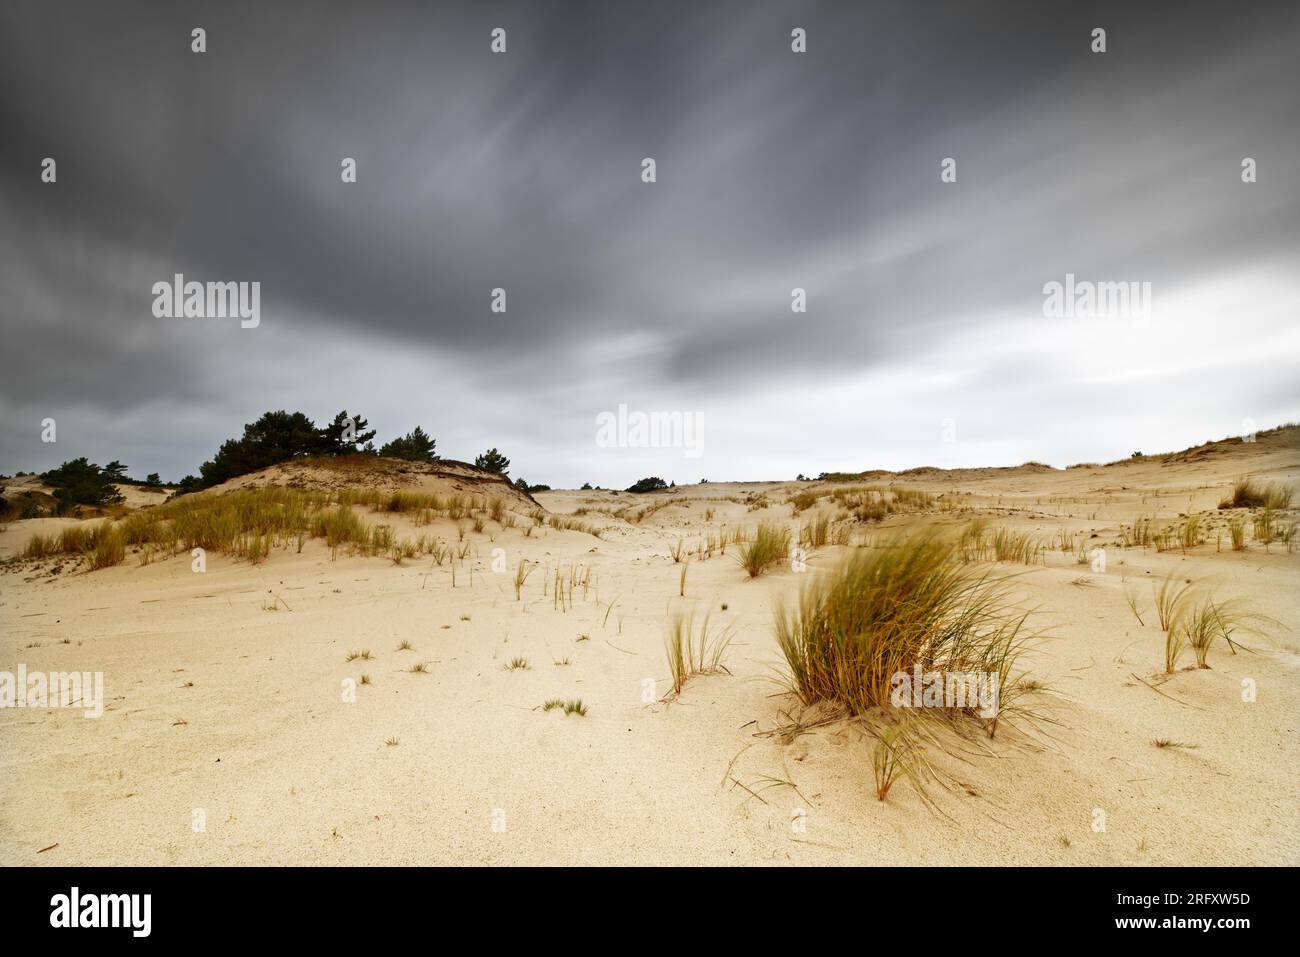 Sandige Gegend mit Dünen, die mit einzelnen Grasfüßen und Büschen überwuchert sind, Wolkenbewegungsspuren bei langfristiger Exposition, Tiefeneffekt - Ort: Polen Stockfoto